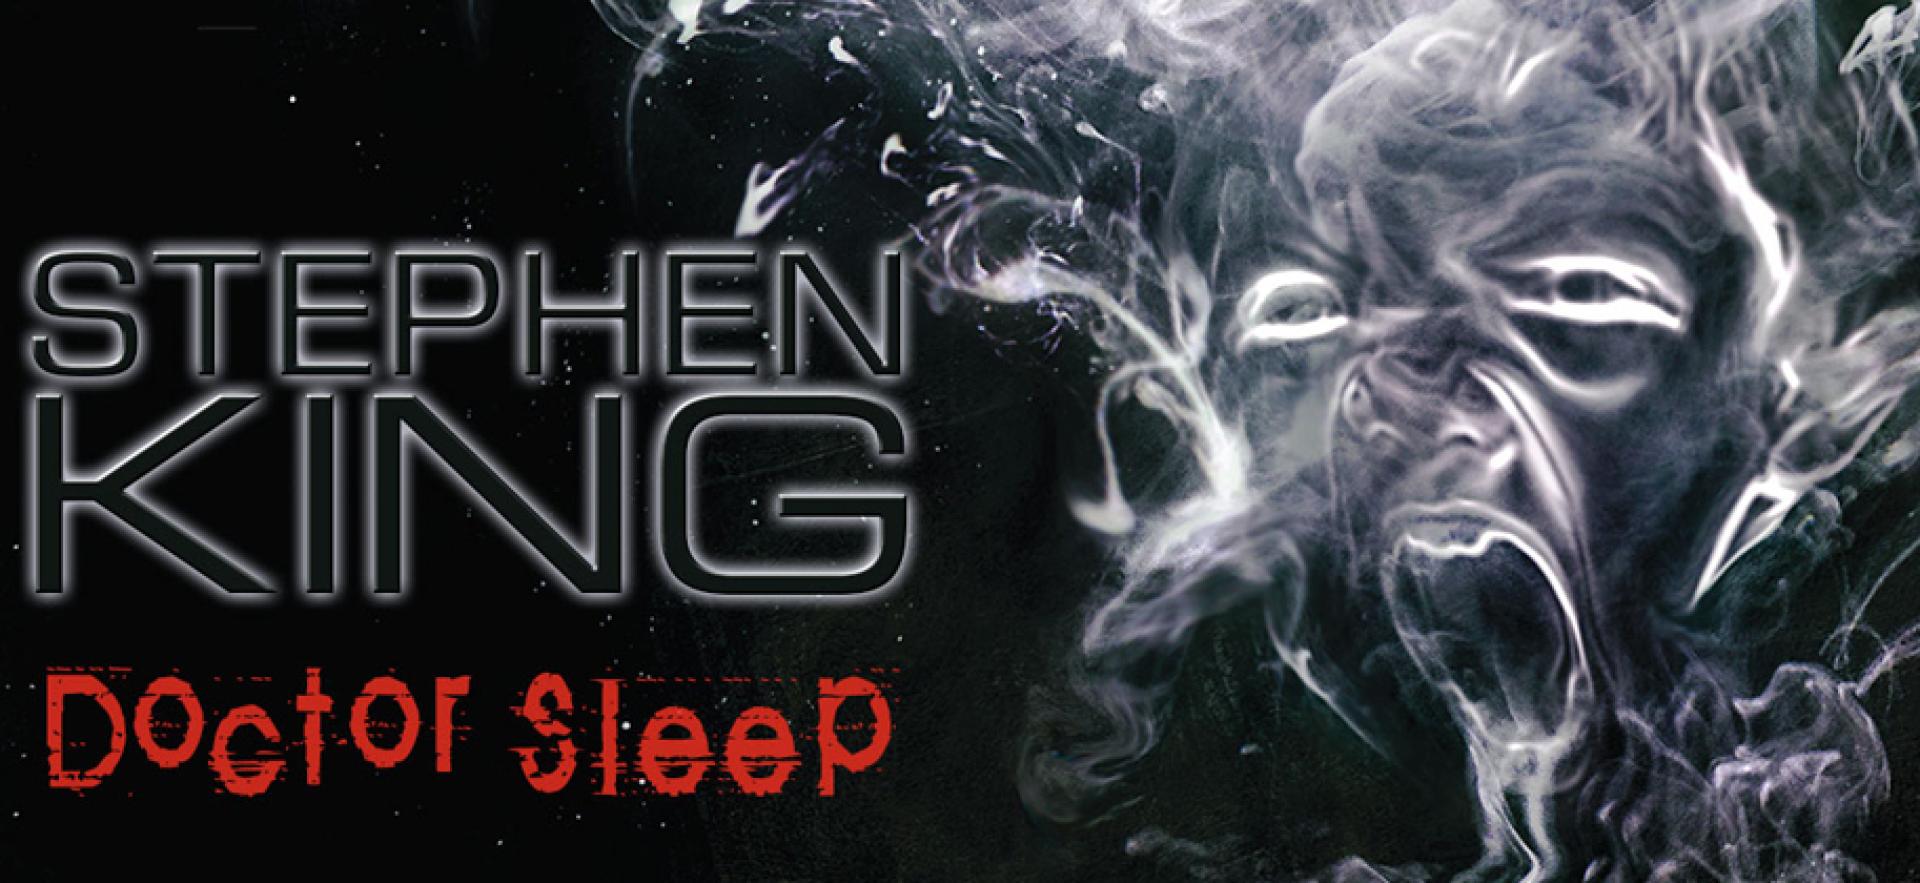 Két Stephen King adaptáció is premierdátumot kapott